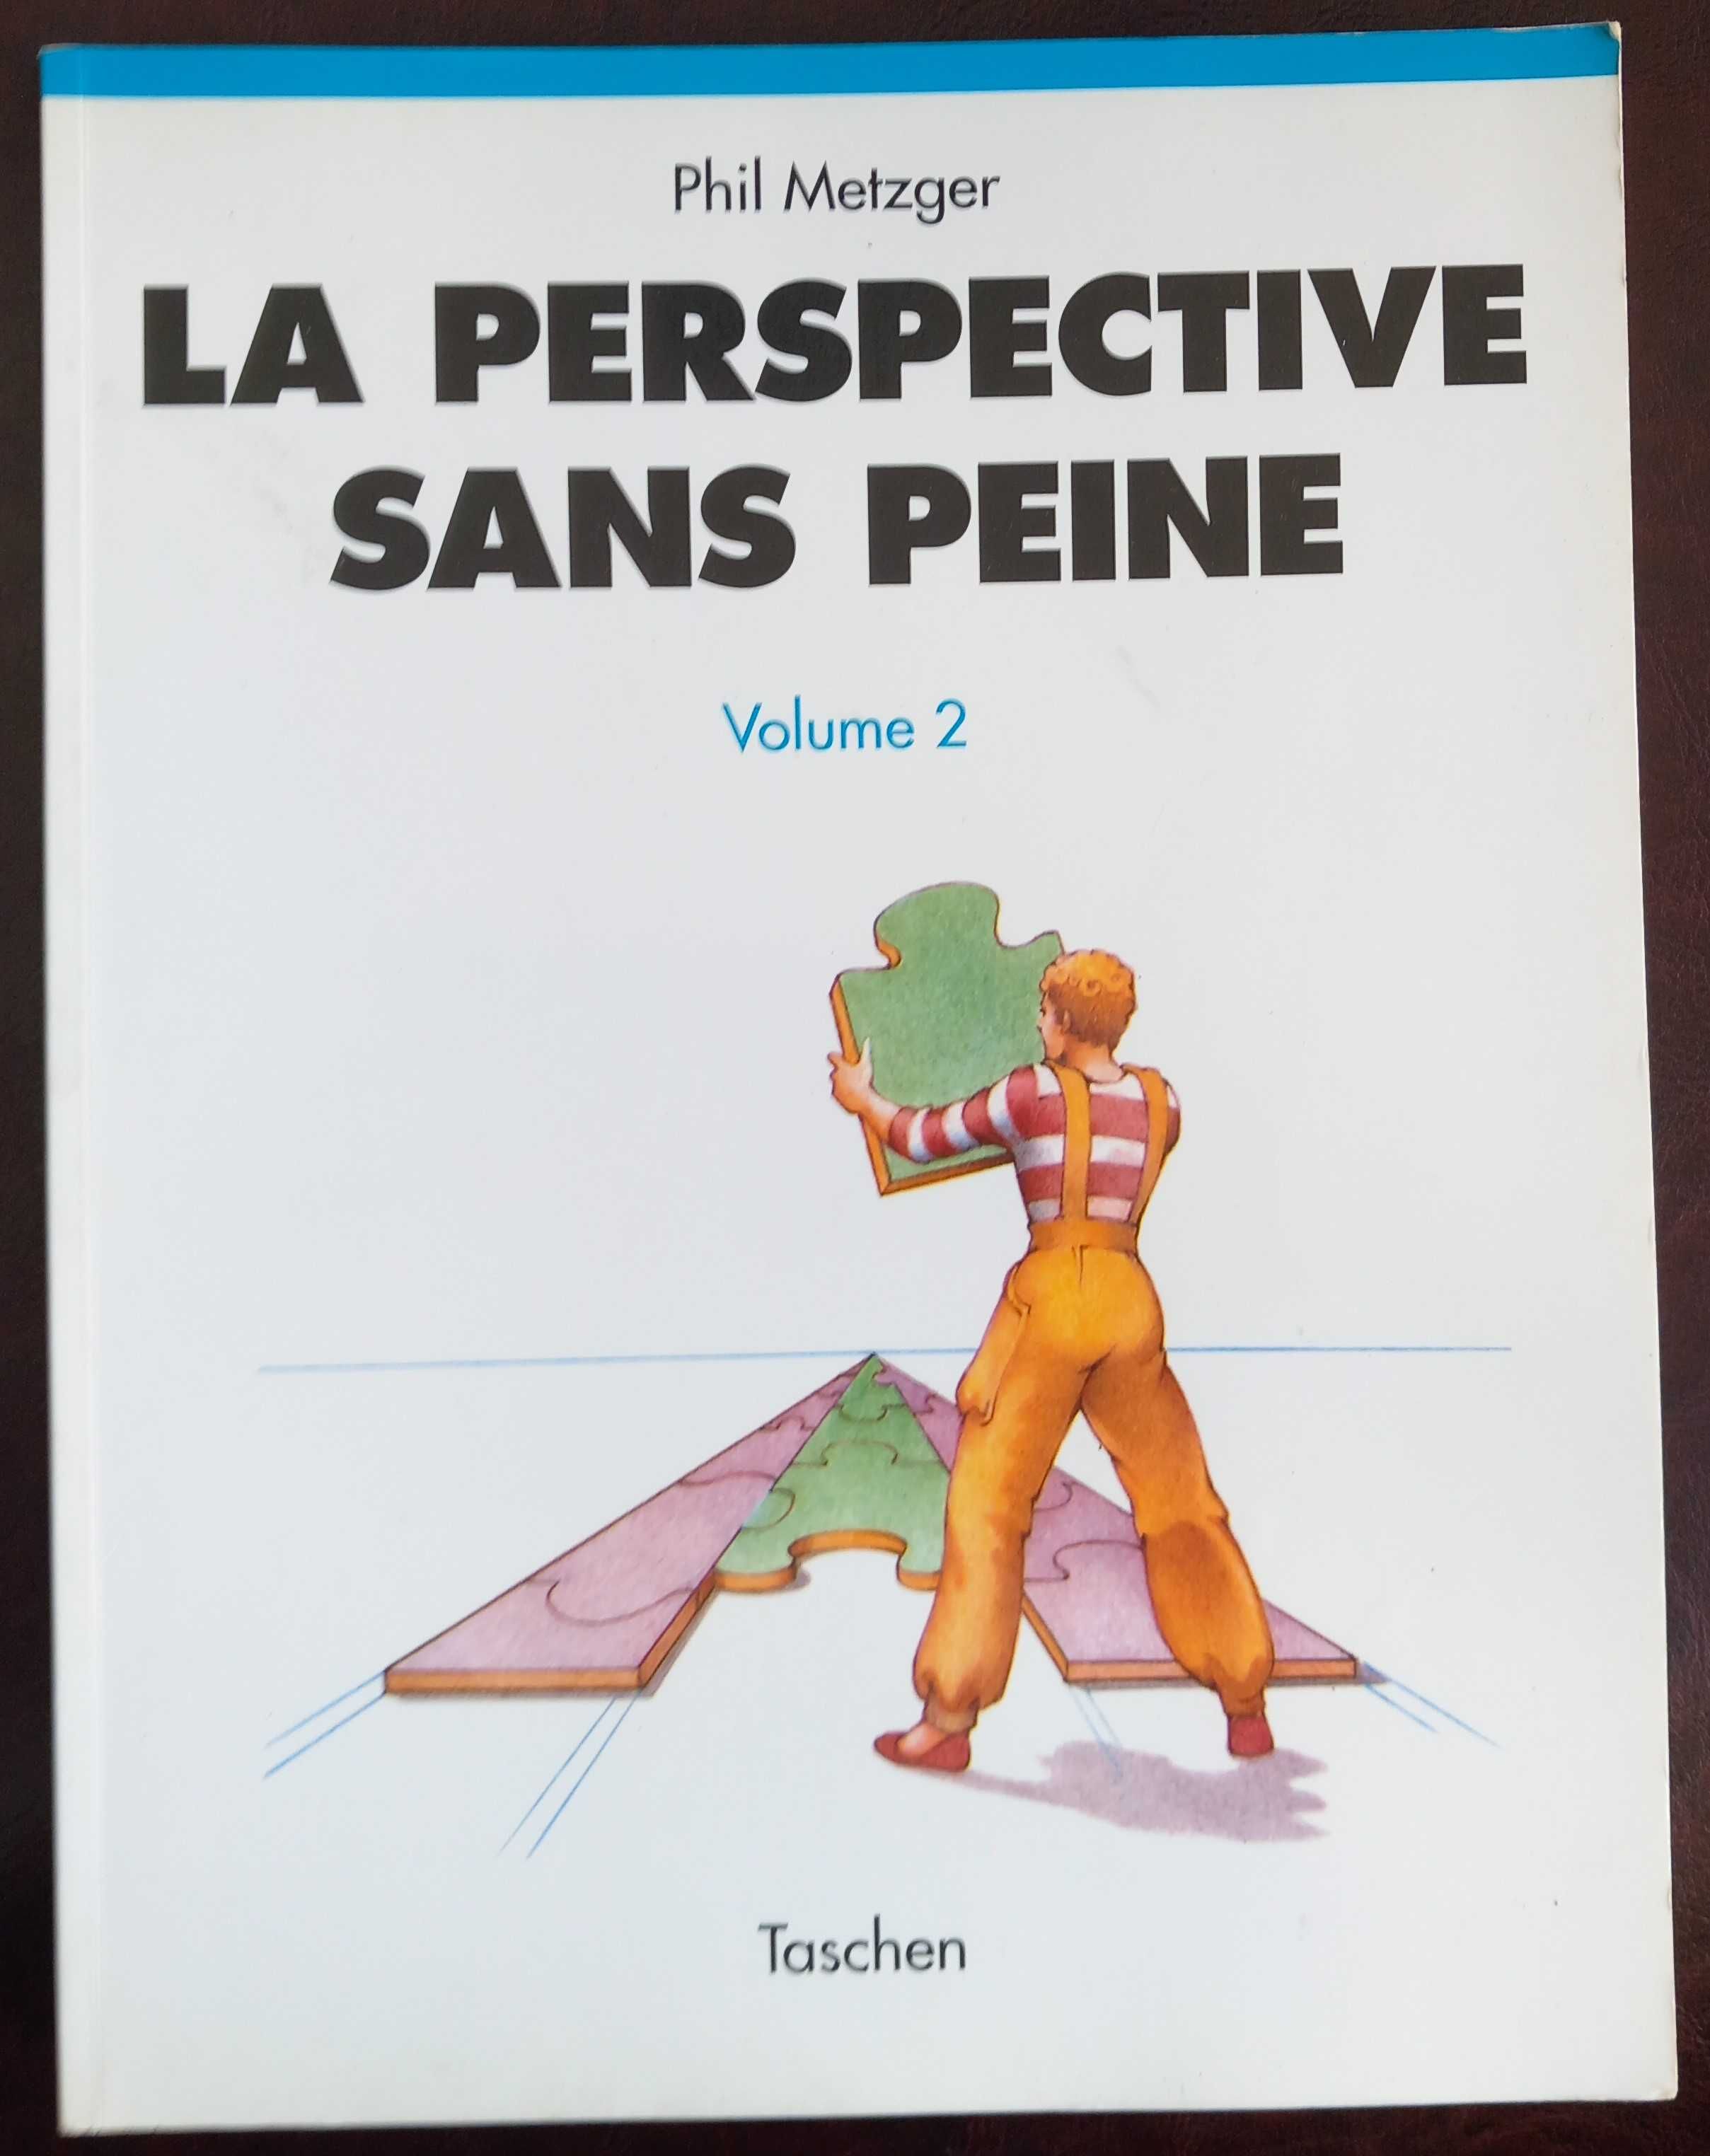 Phil Metzger- La Perspective sans Peine: tome 2 [Taschen] [geometria]